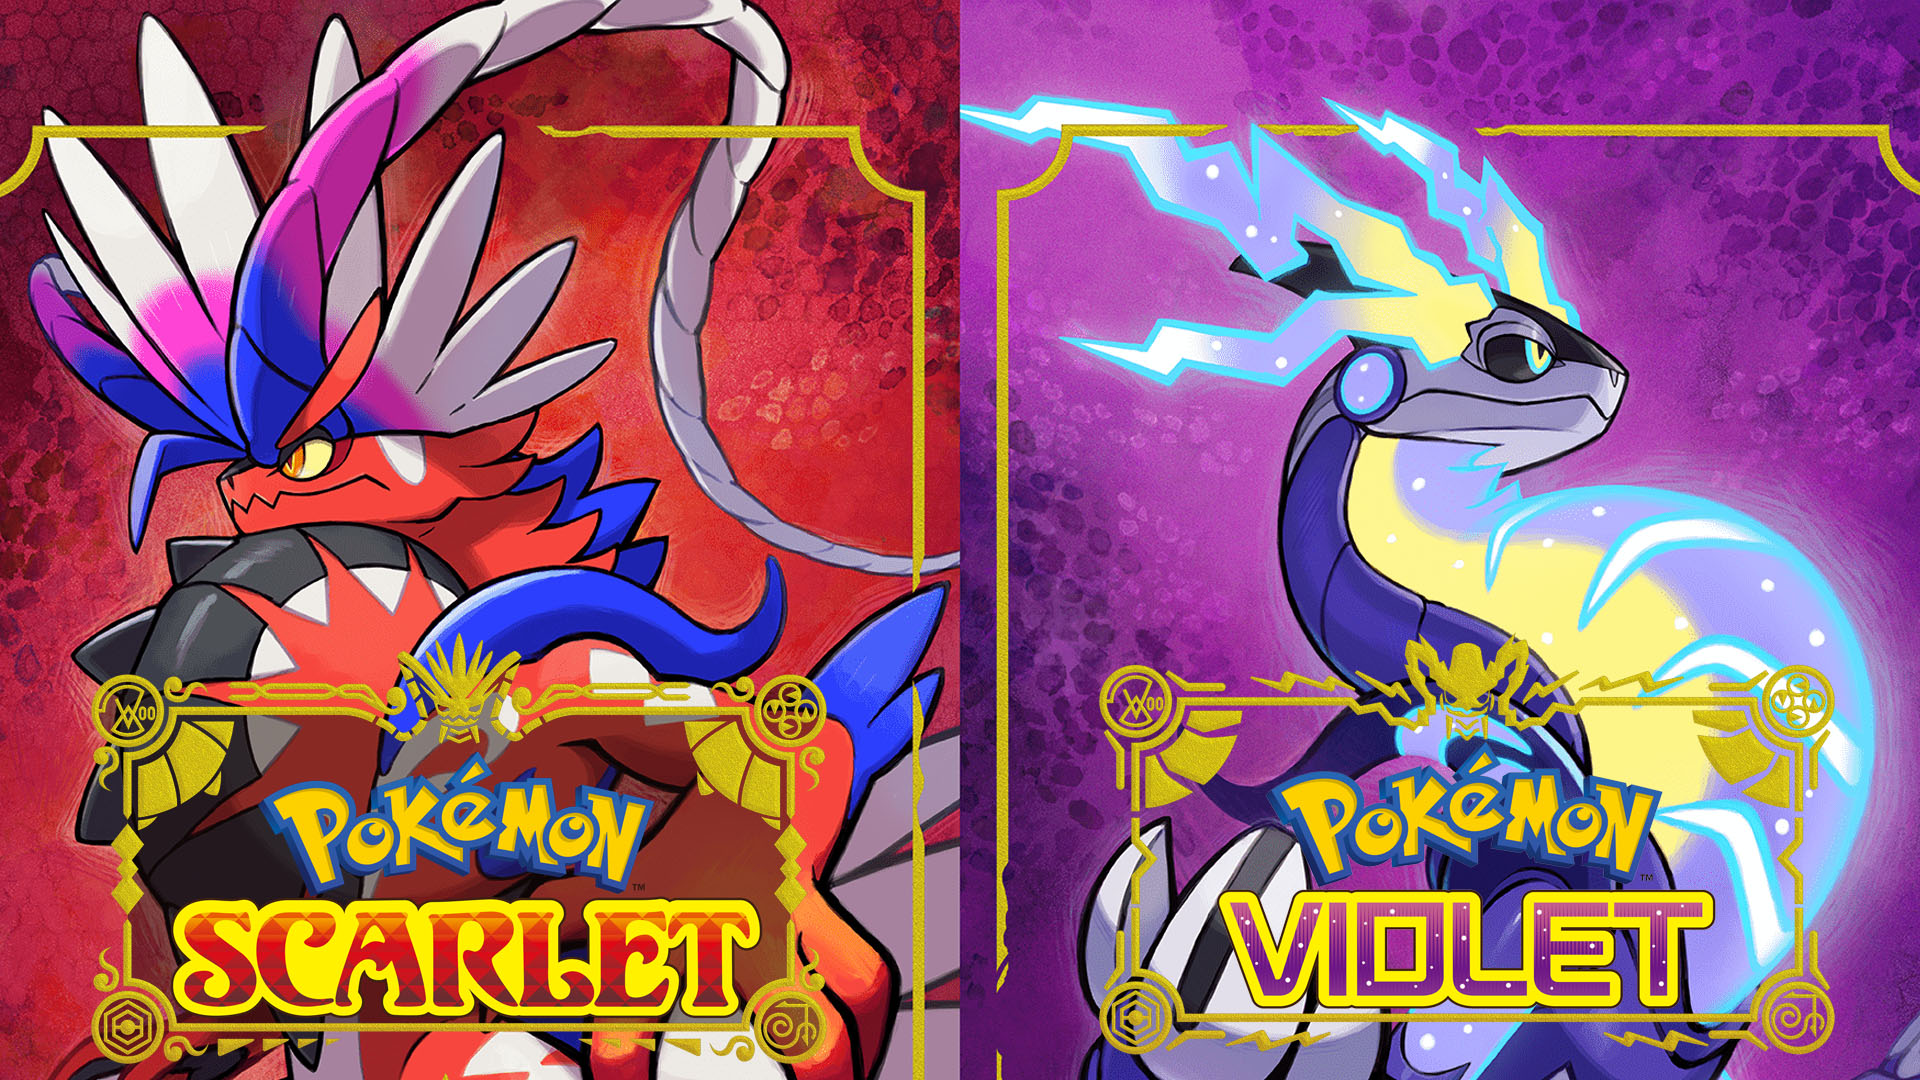 Pokemon Scarlet and Violet release dates set